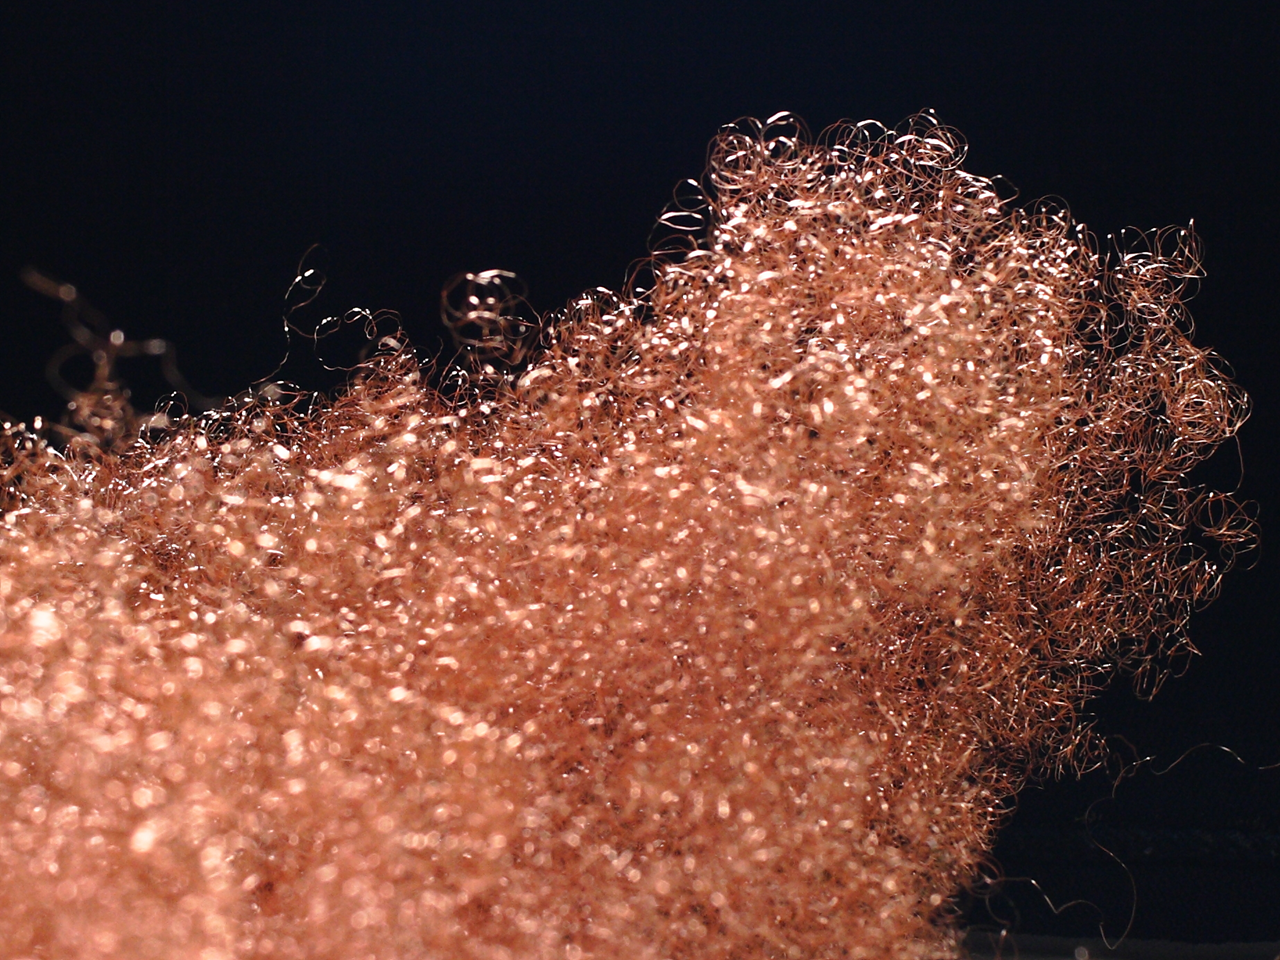 06_Copper shavings after cutting_Měděná špona po řezání